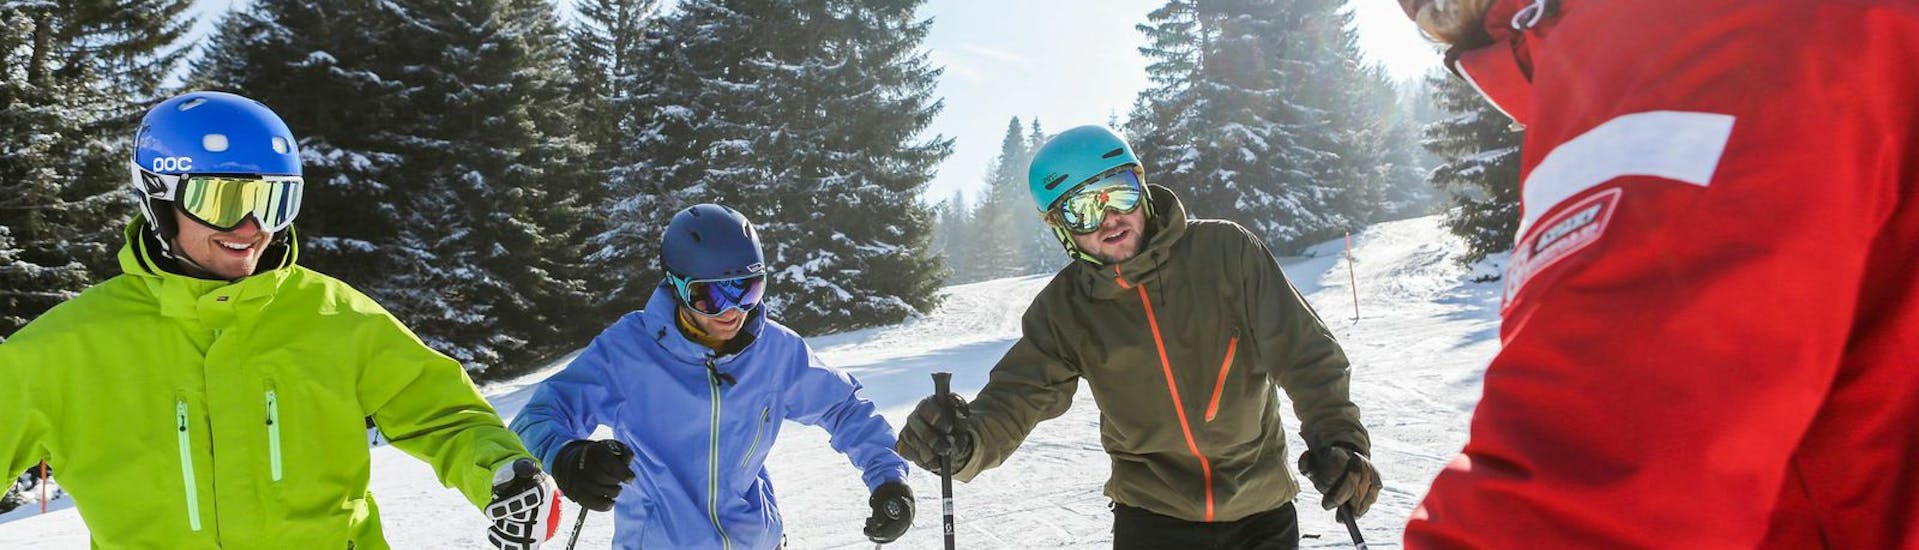 Skileraar met gezicht naar studenten tijdens de skilessen voor volwassenen voor ervaren skiërs bij Skischool Nova.